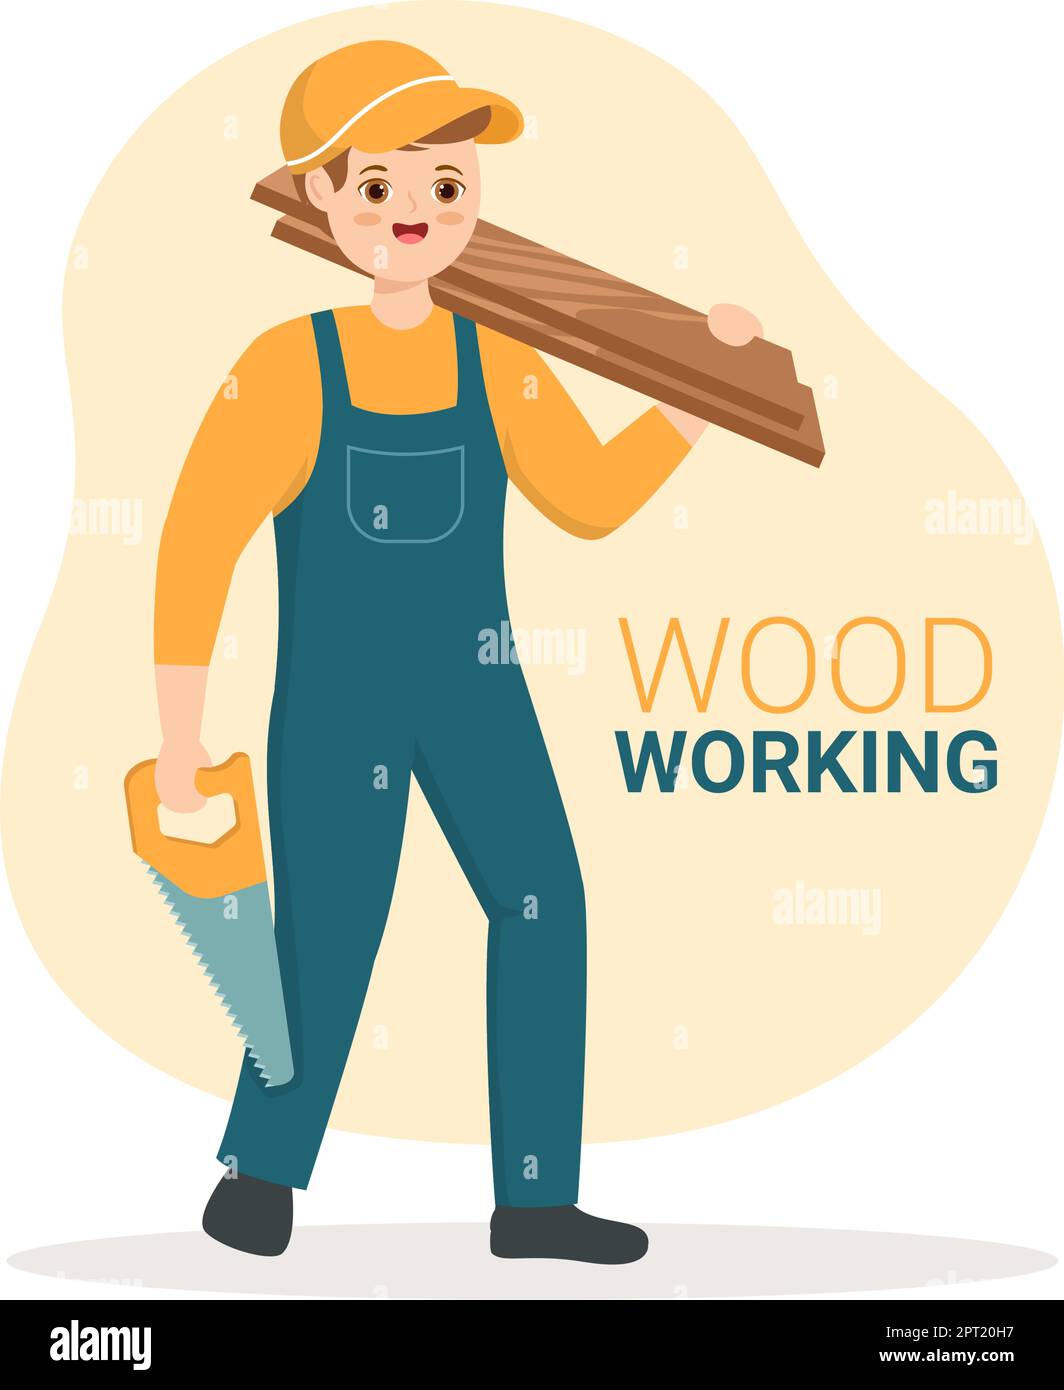 Holzbearbeitung mit Holzschnitt durch modernen Handwerker und Arbeiter unter Verwendung des Werkzeugsatzes in der Abbildung der handgezeichneten flachen Cartoon-Vorlage Stock Vektor